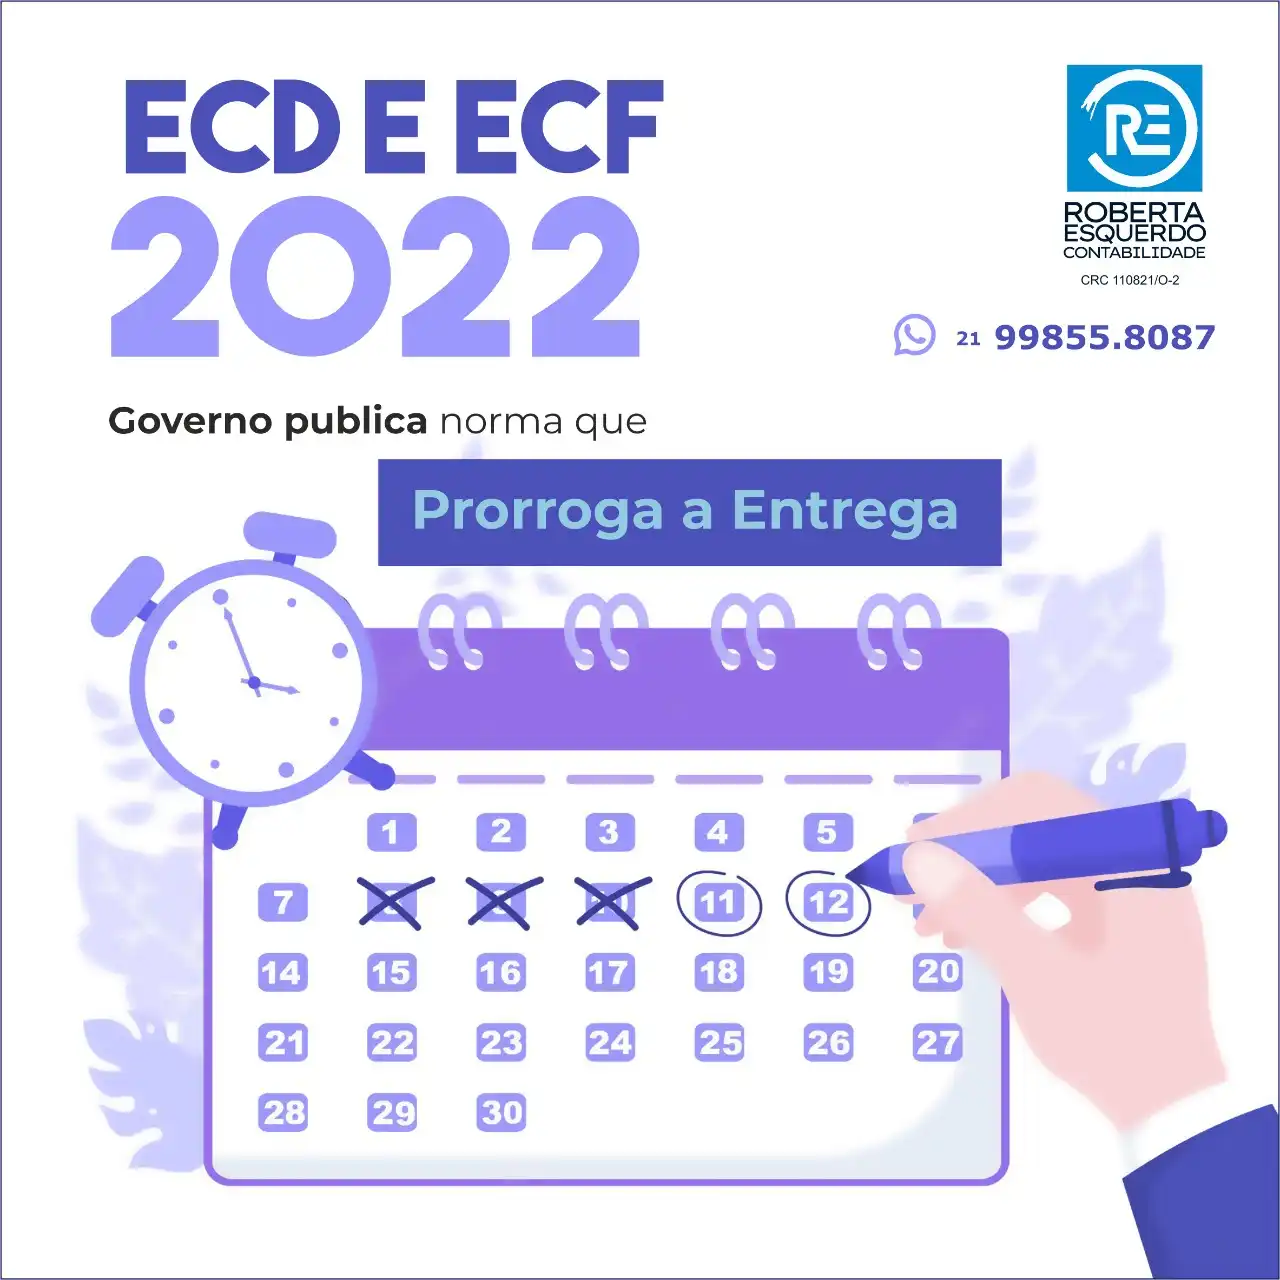 
Propaganda Post sobre ECD e ECF para Escritório de Contabilidade



